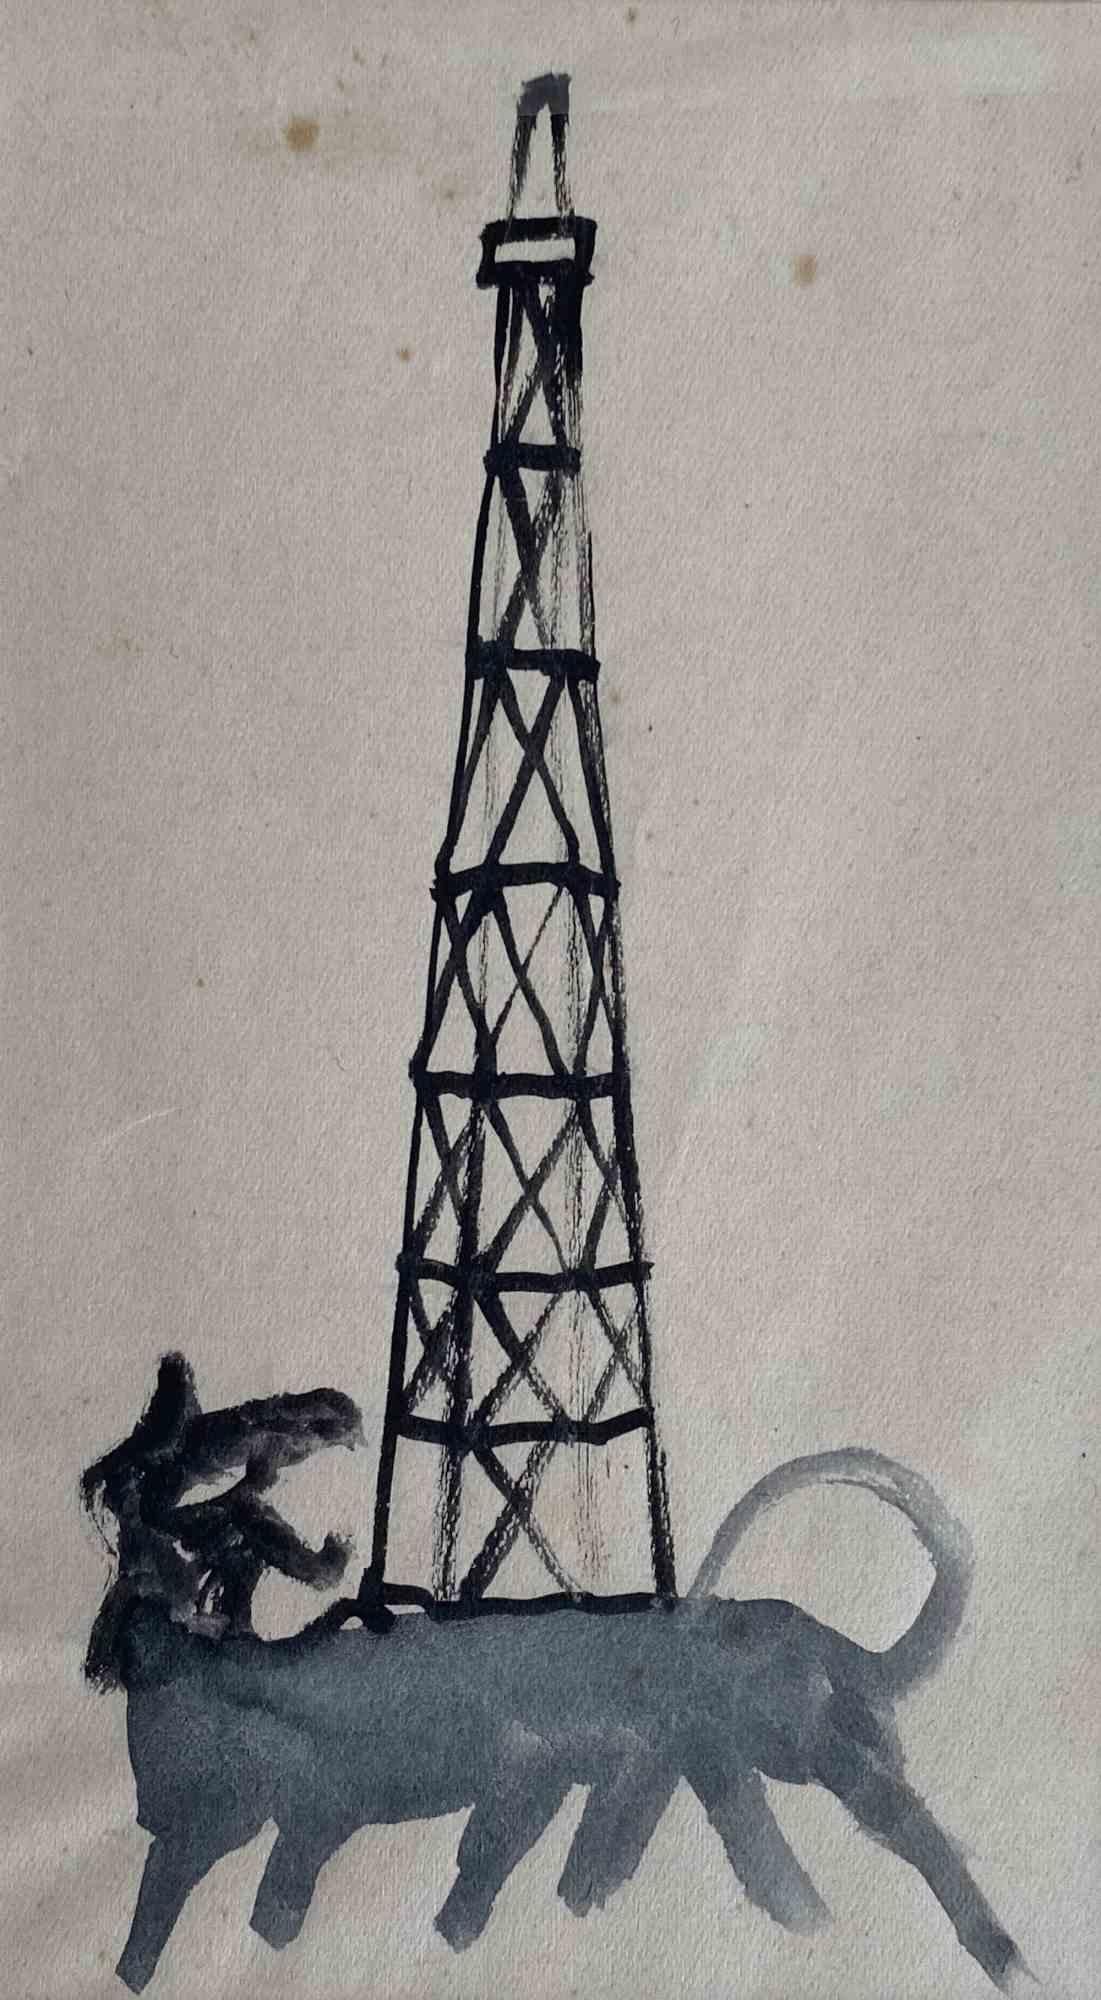 Barken am Tower – Zeichnung in Tempera von Mino Maccari – Mitte des 20. Jahrhunderts